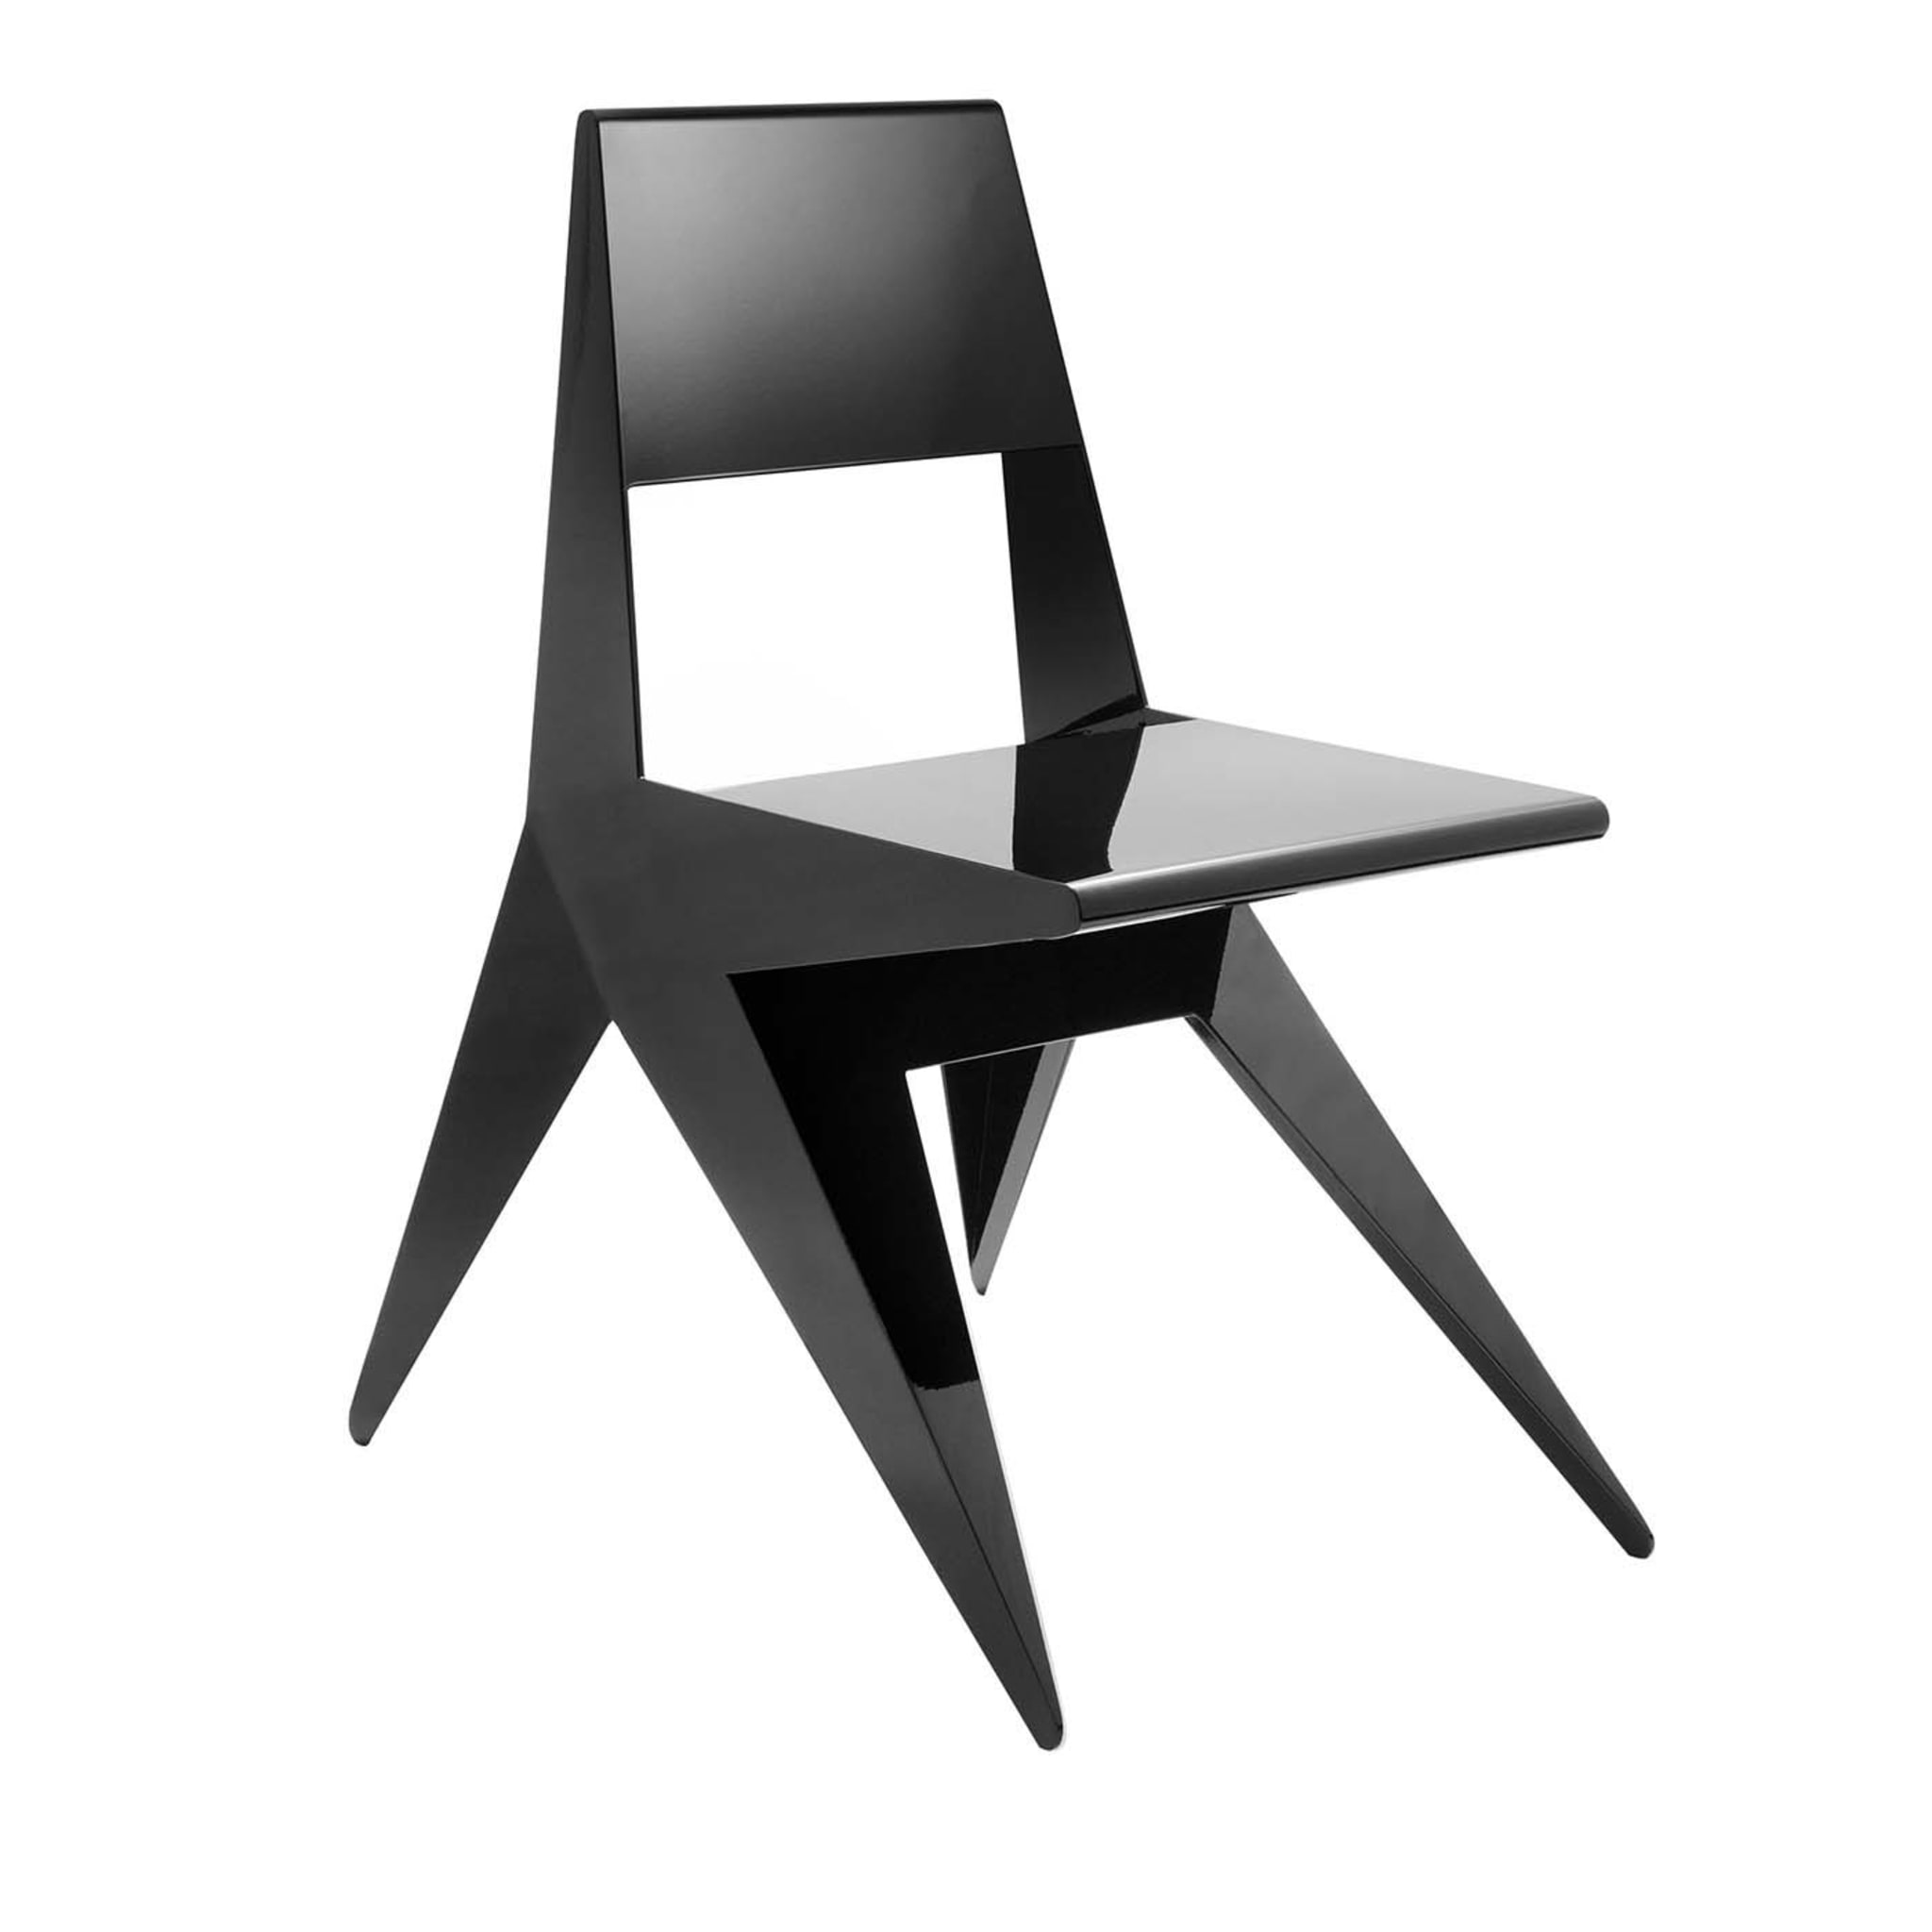 Star Black Chair by Antonio Pio Saracino - Main view